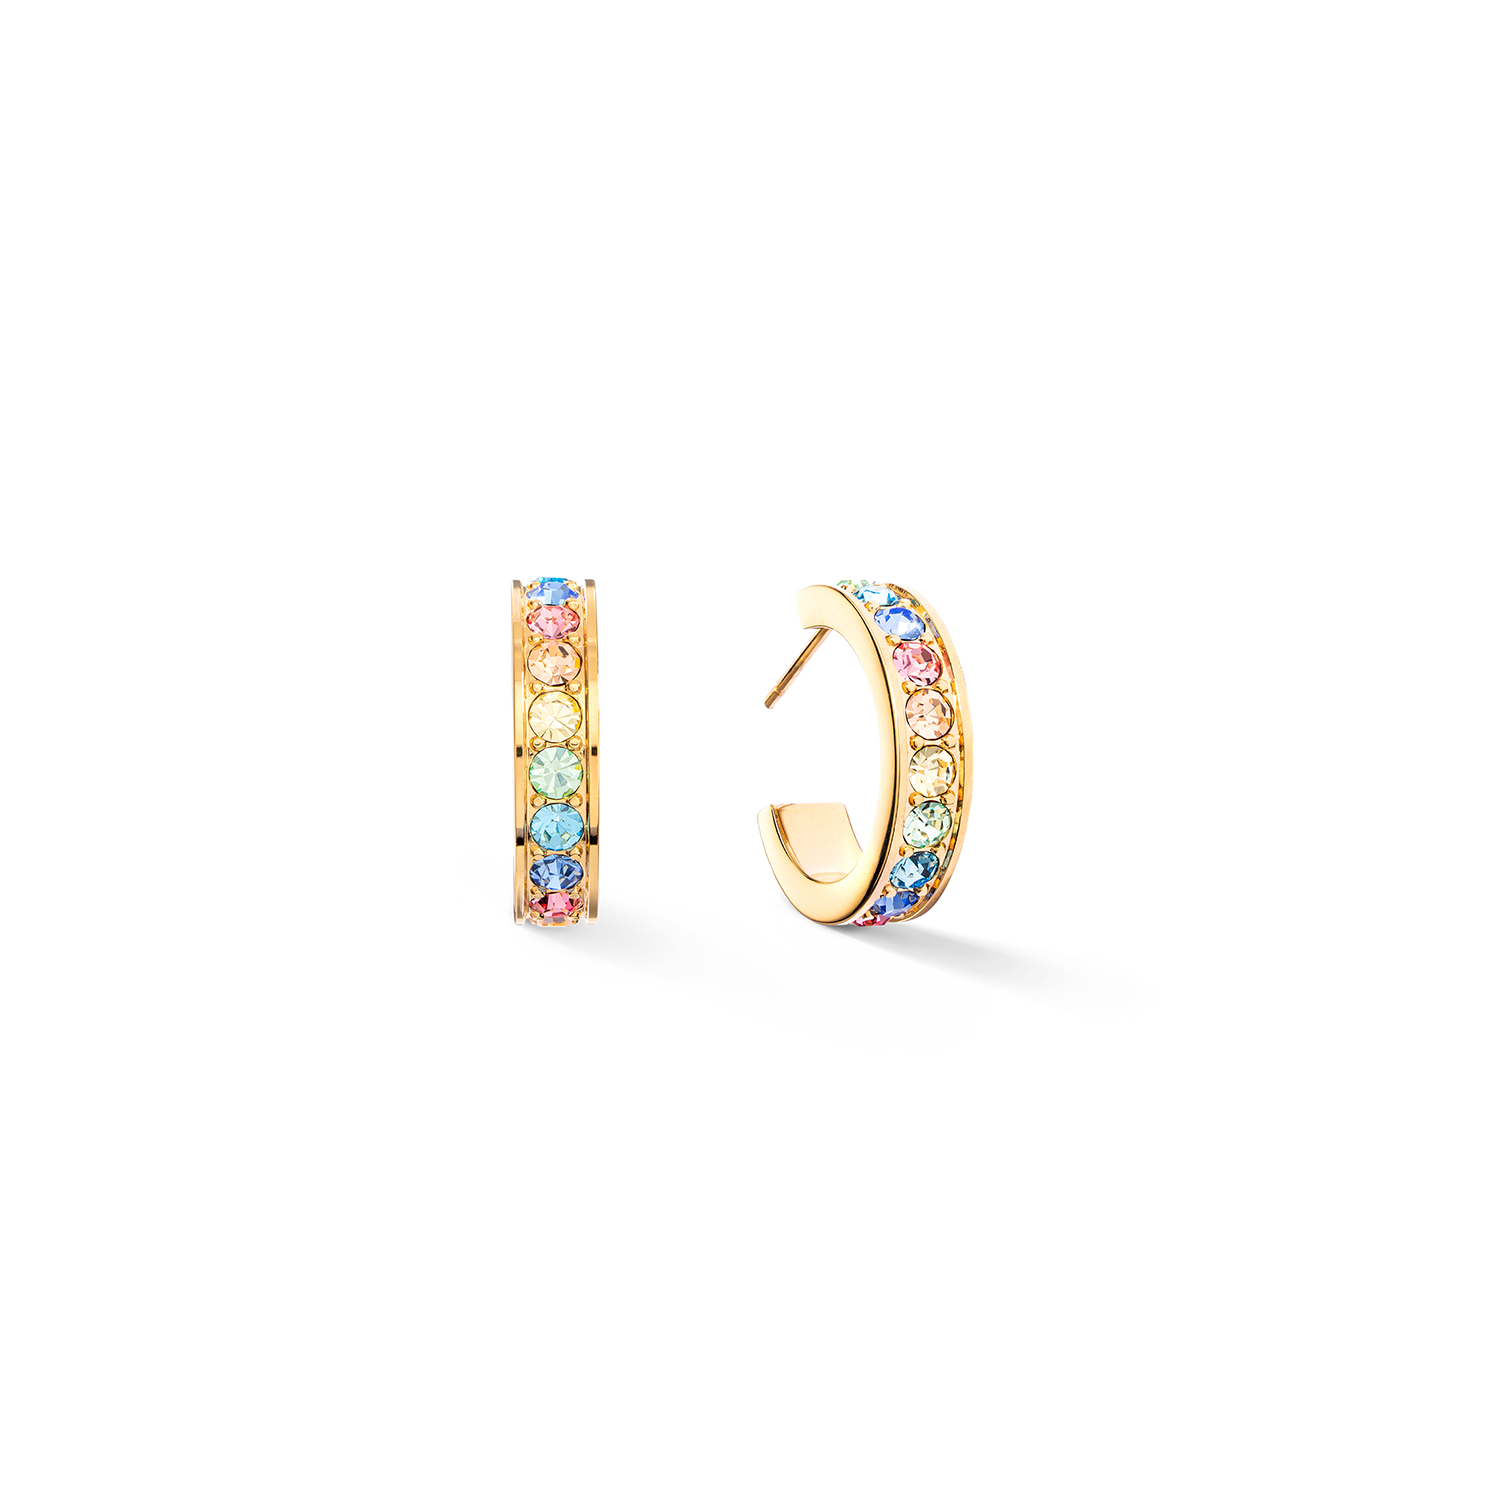 Hoop Wide Gold & Pastel Crystal Pavé Earrings 0131/21_1590